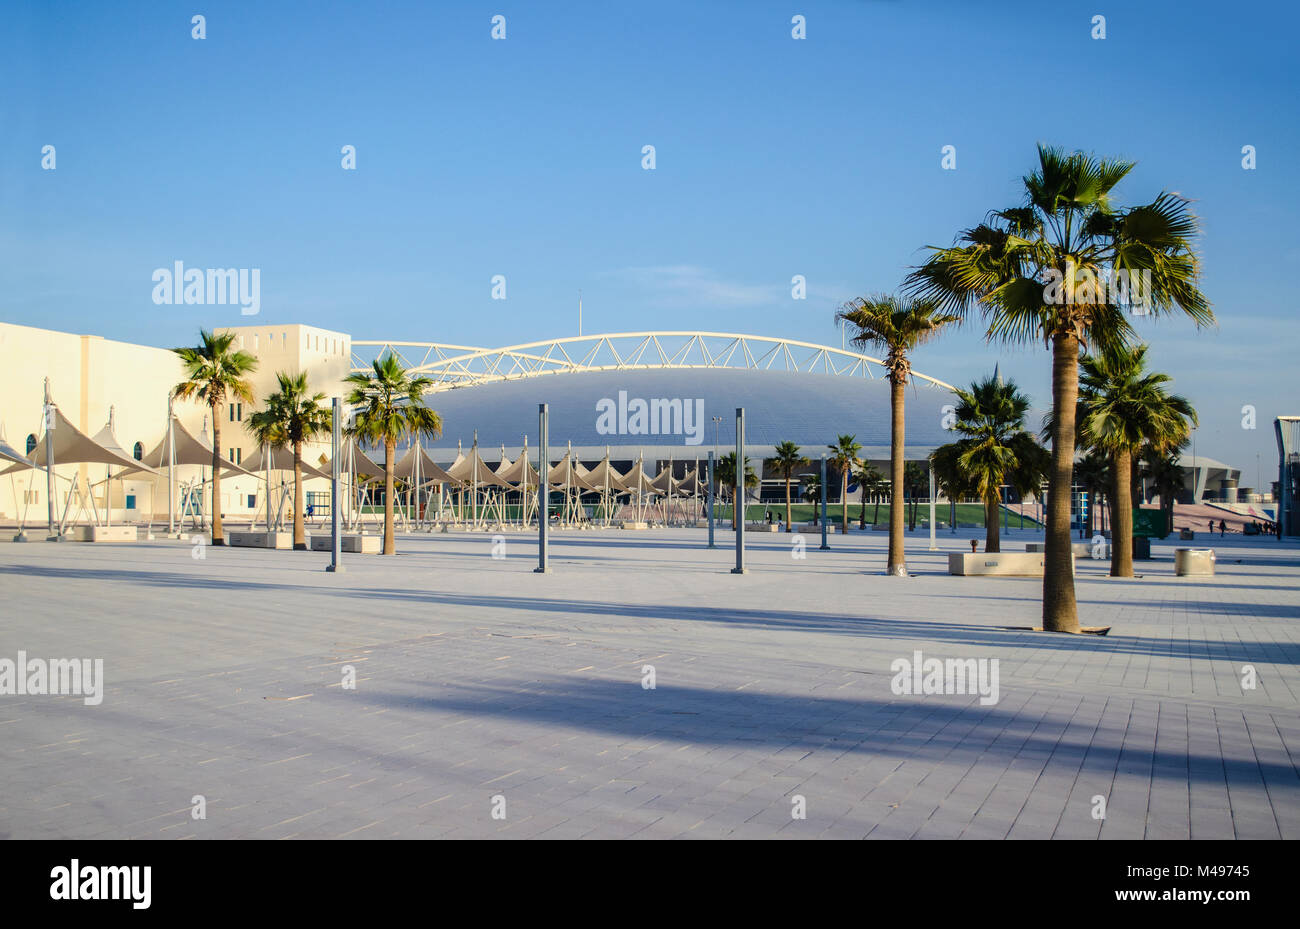 Aspire Zone, auch bekannt als Doha Sports City, ist ein 250 Hektar großer Sportkomplex im Al WAB-Viertel von Doha, Katar. Stockfoto